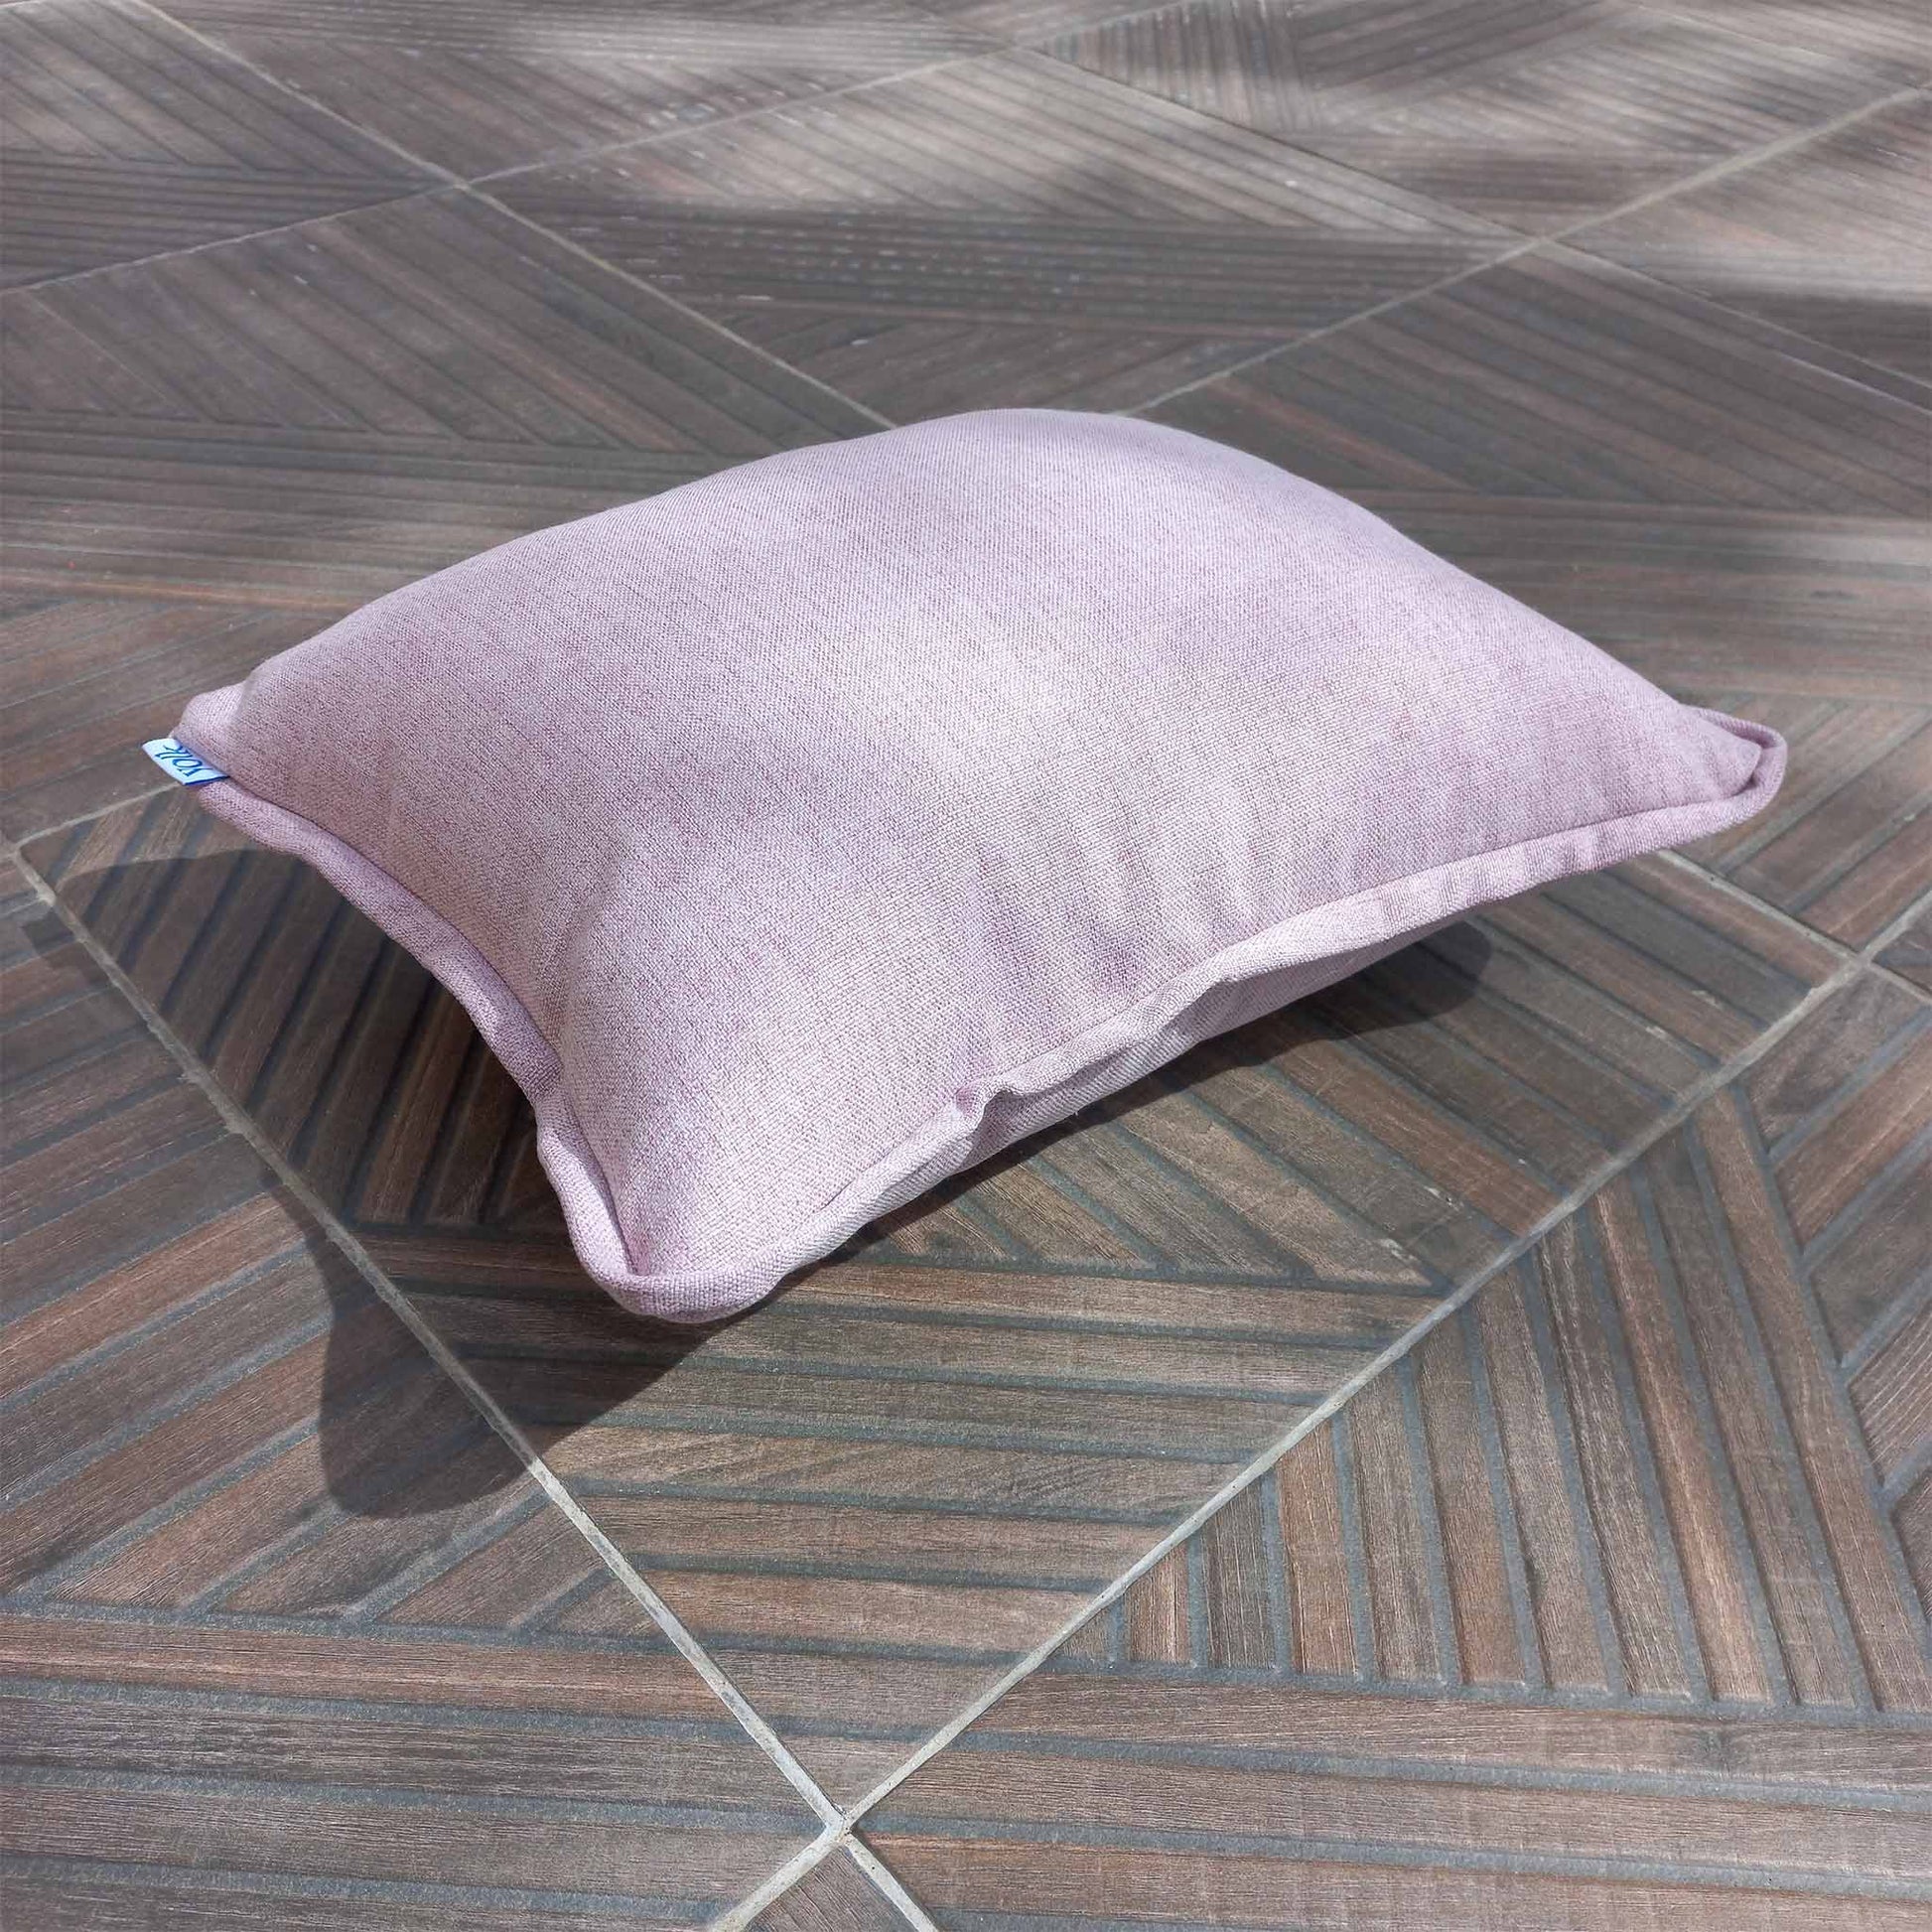 Decorative cushion on a patio floor